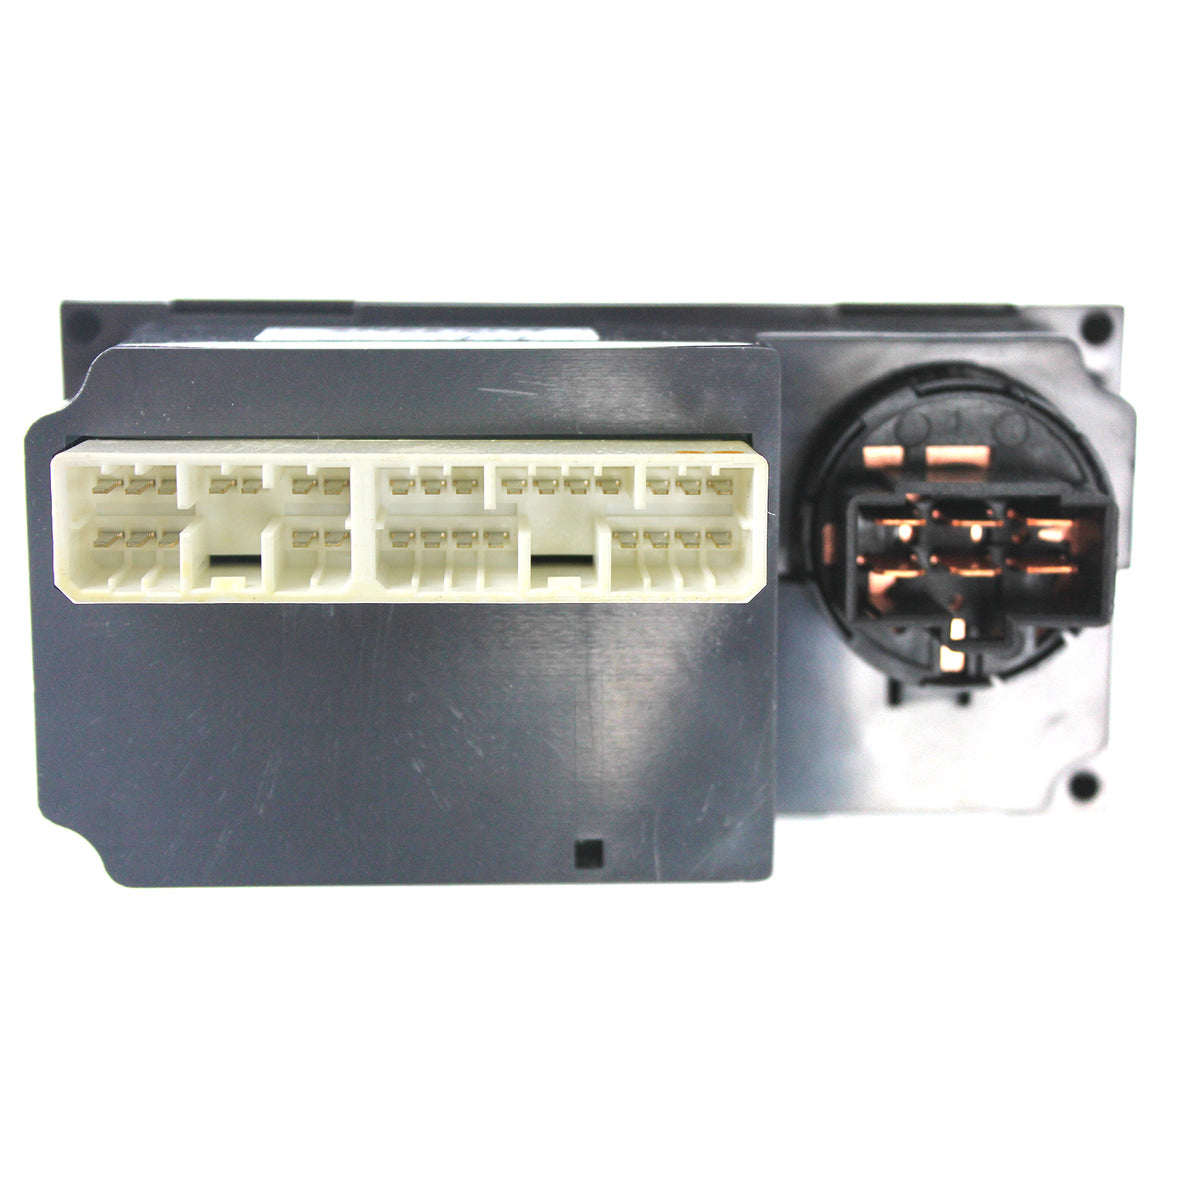 14637623 VOE14637623 Volvo EC80D Air Conditioner Control Panel 12V